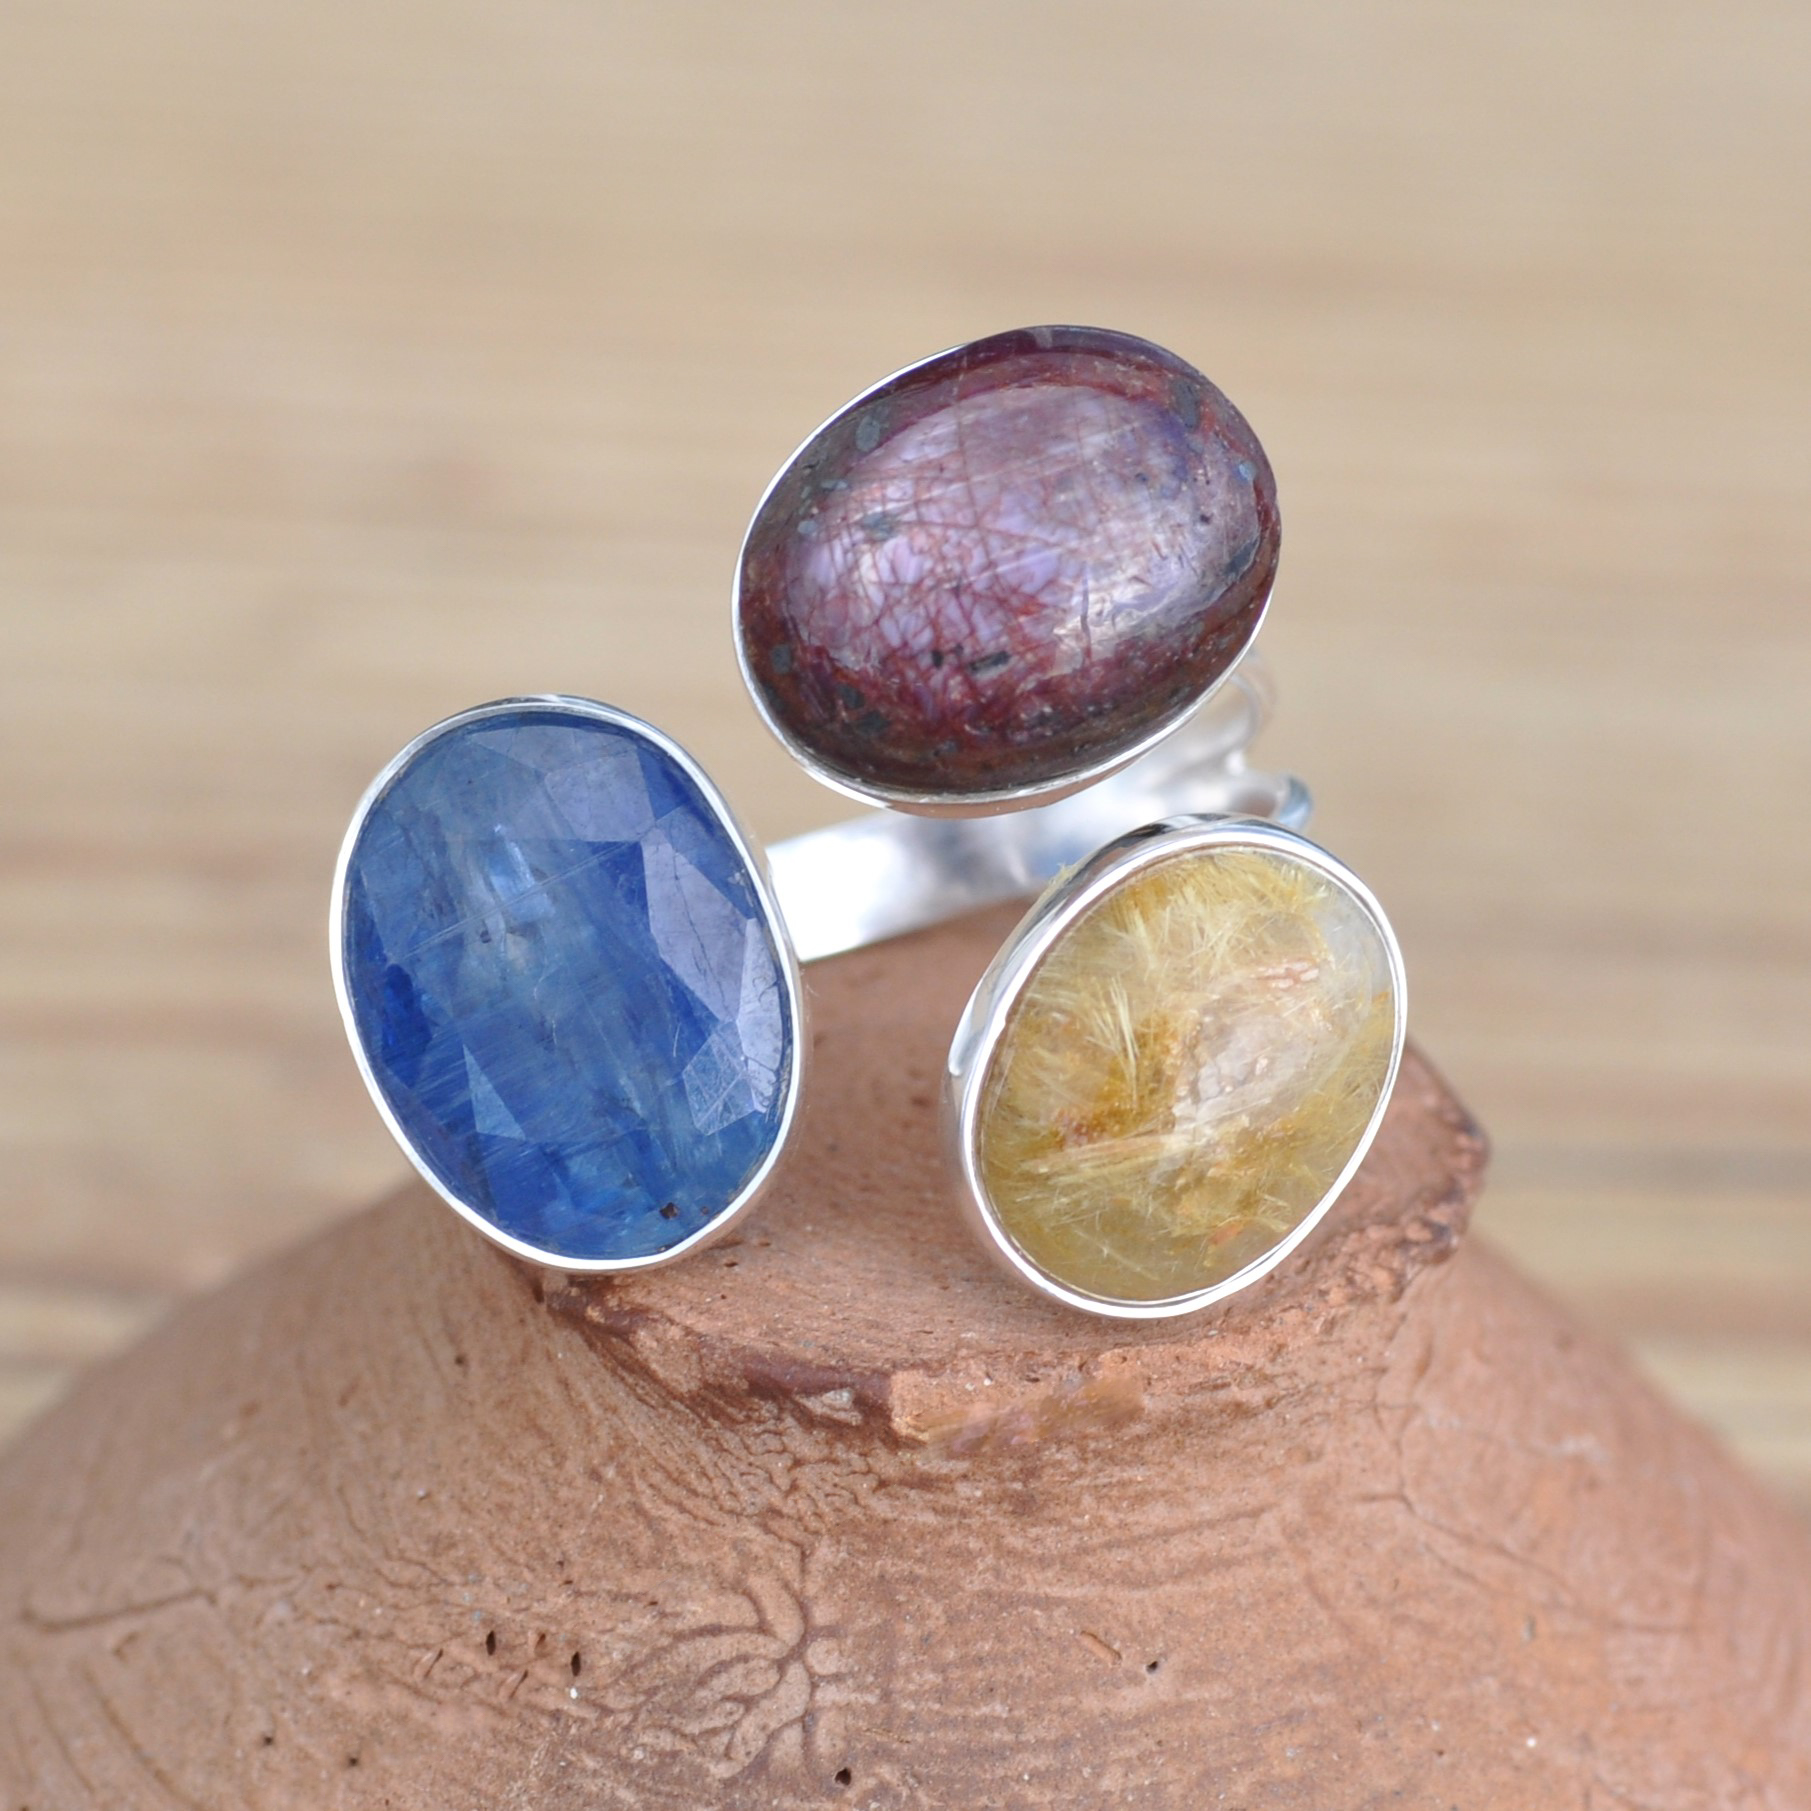 NEW ! Bague ouverte argent et 3 pierres Cyanite, Quartz rutile et Rubis (bleu) (doré) (violet)